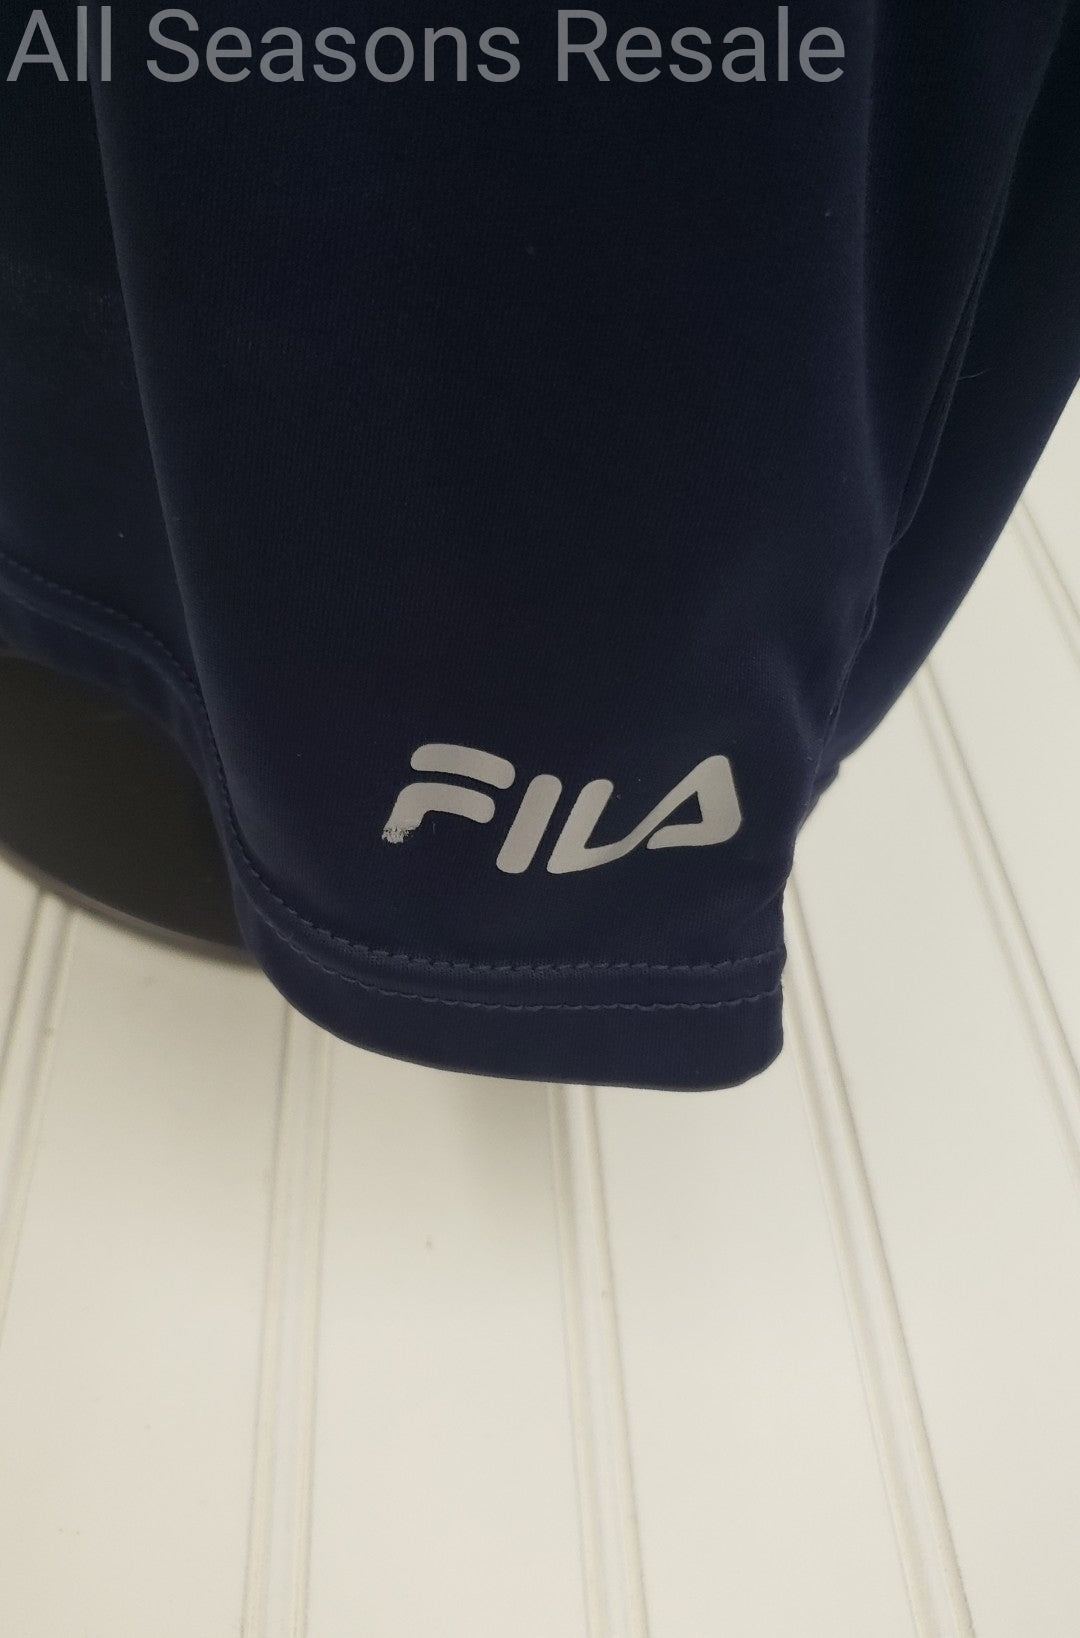 Men's Fila Activewear T Shirt Top Blus Size S 2D